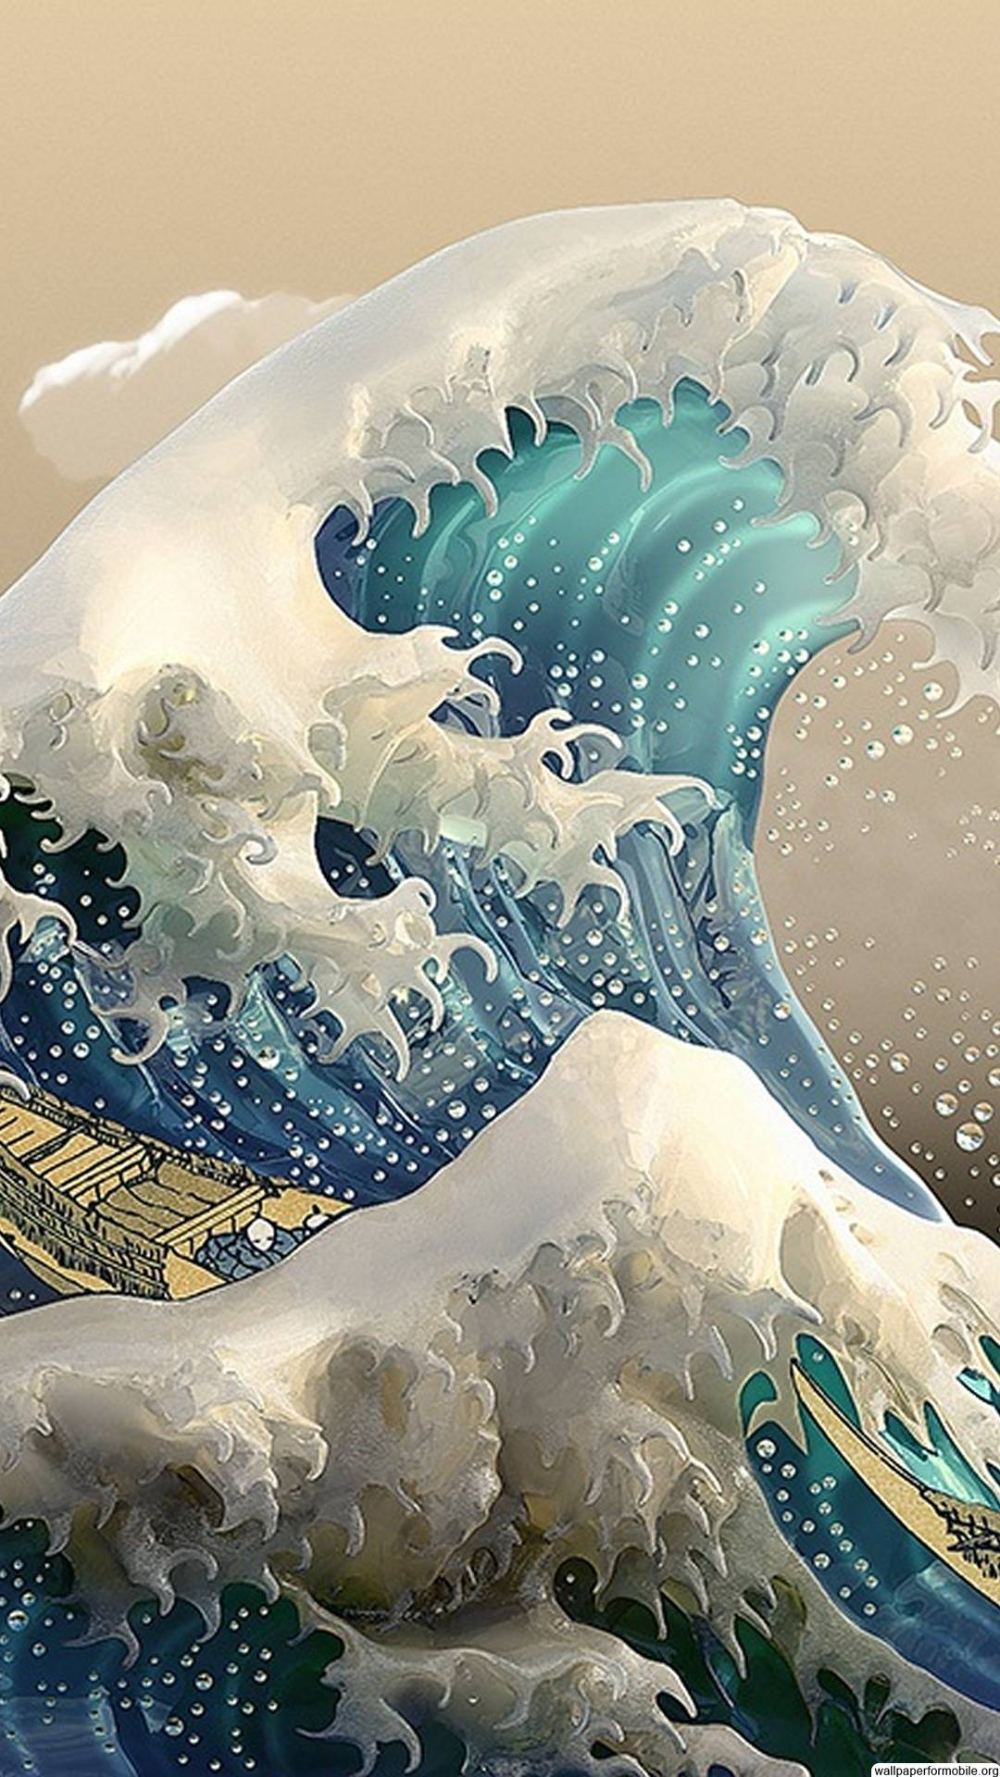 The Great Wave Off Kanagawa Wallpaper. Waves wallpaper